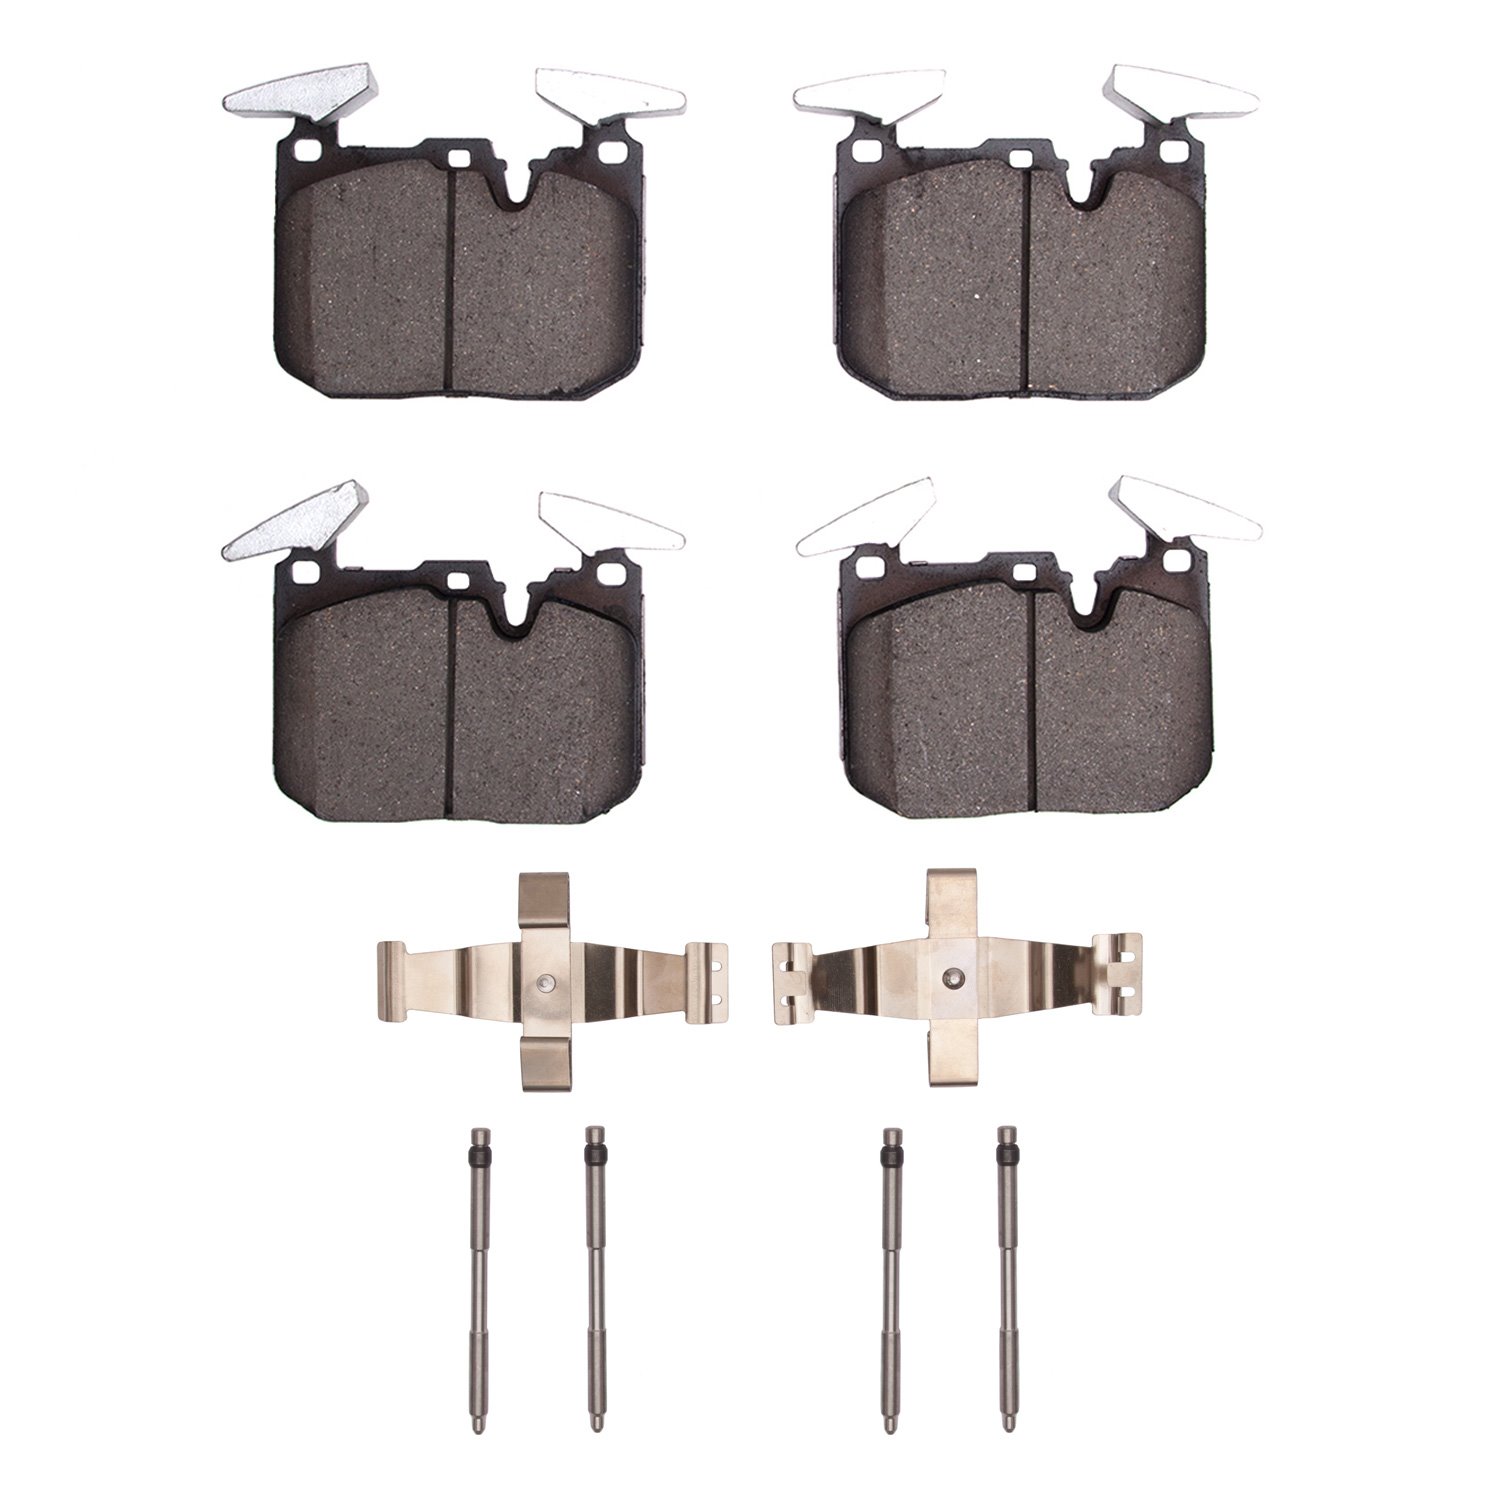 1310-1609-11 3000-Series Ceramic Brake Pads & Hardware Kit, 2014-2020 BMW, Position: Front